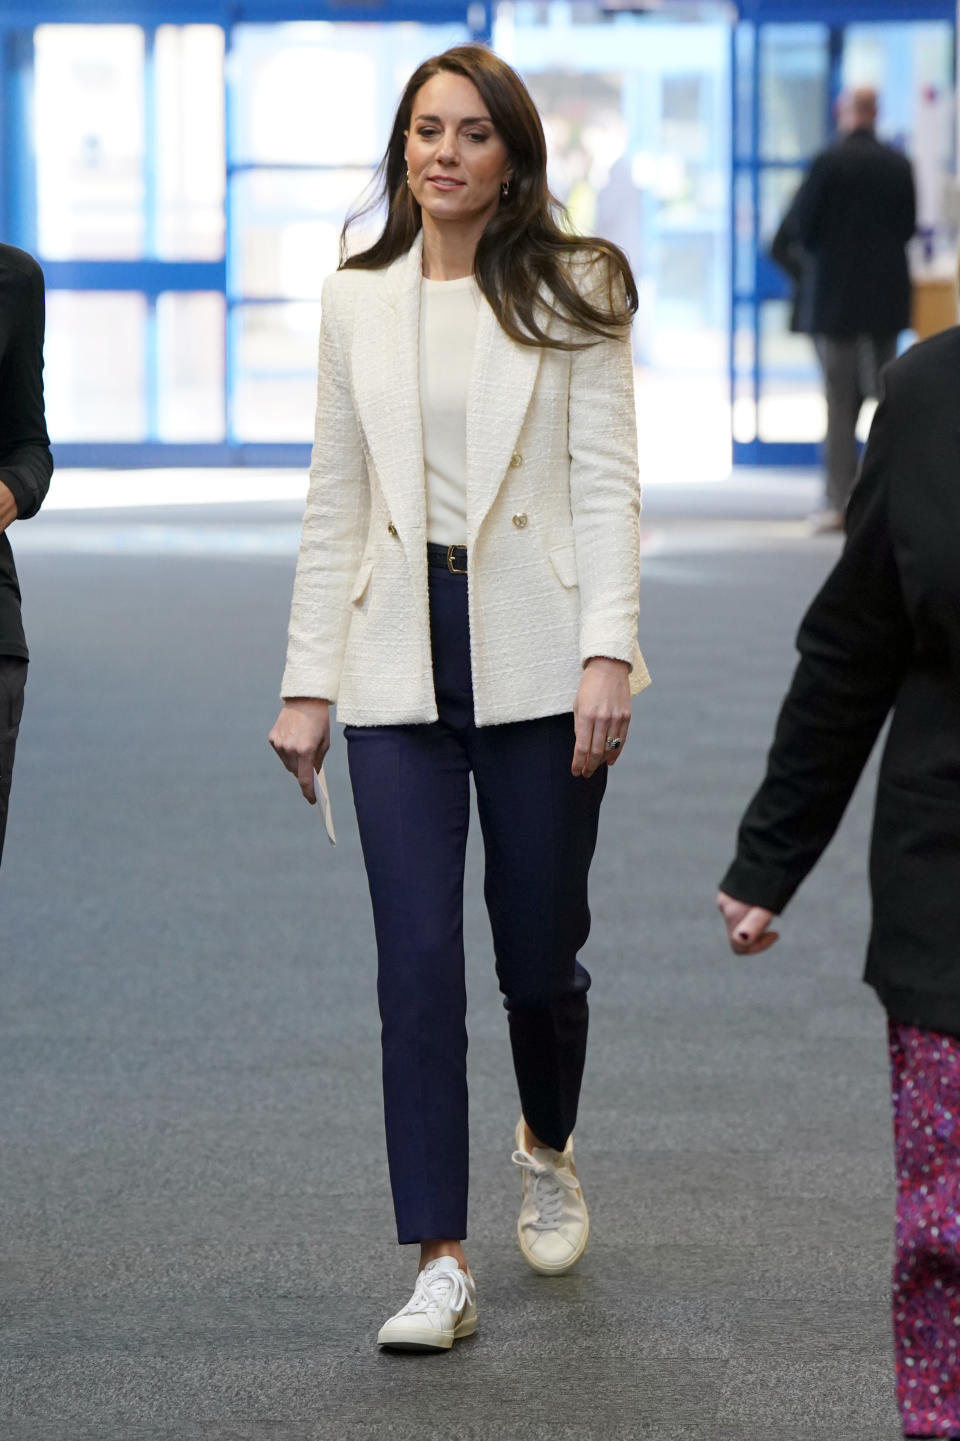 Der Look von Prinzessin Kate geht immer und ist absolut bezahlbar! (Bild: Getty Images)                                                                                                                                                                                                              